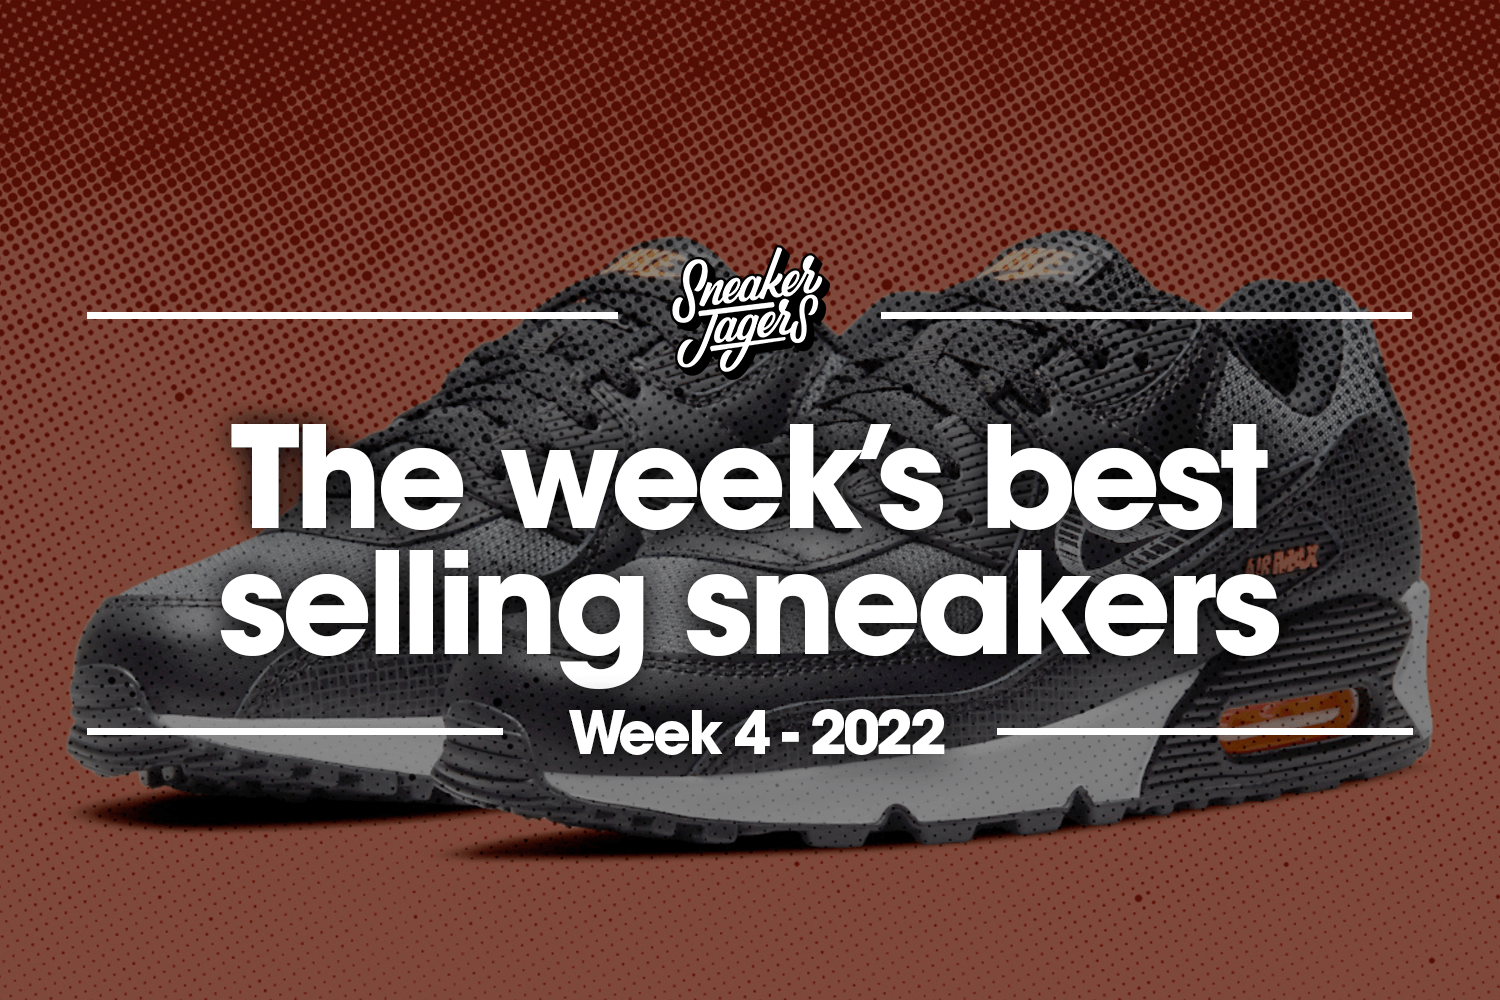 The 5 best-selling sneakers of week 4